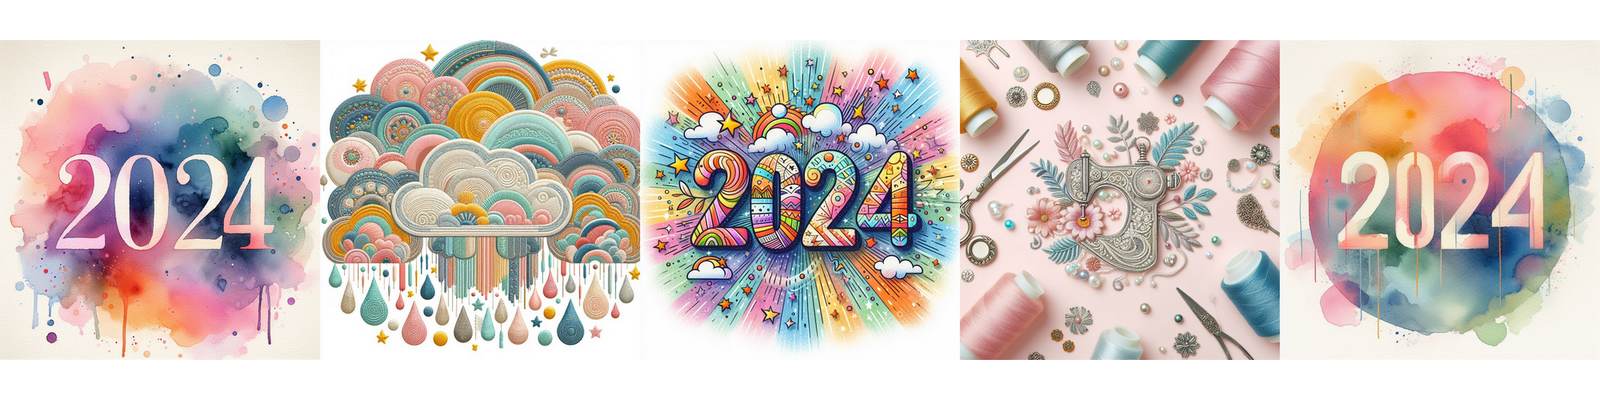 Couture, broderie, bijoux, DIY : ce que je souhaite pour 2024